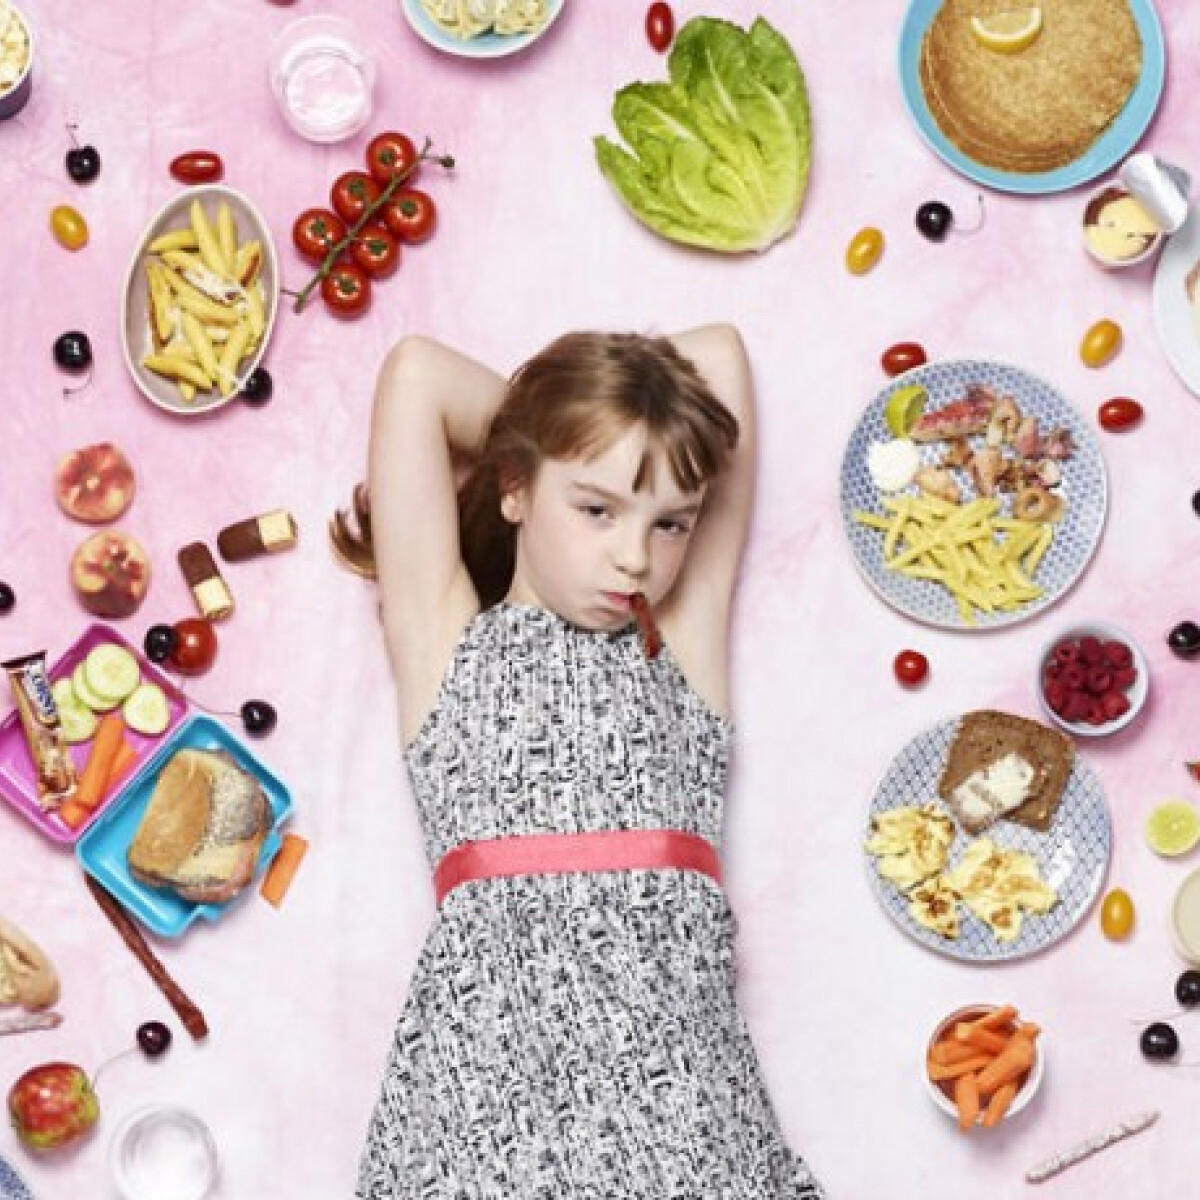 Ezt eszik a gyerekek a világ különböző pontjain - 25 gyerek heti ételei 25 fotón ábrázolva